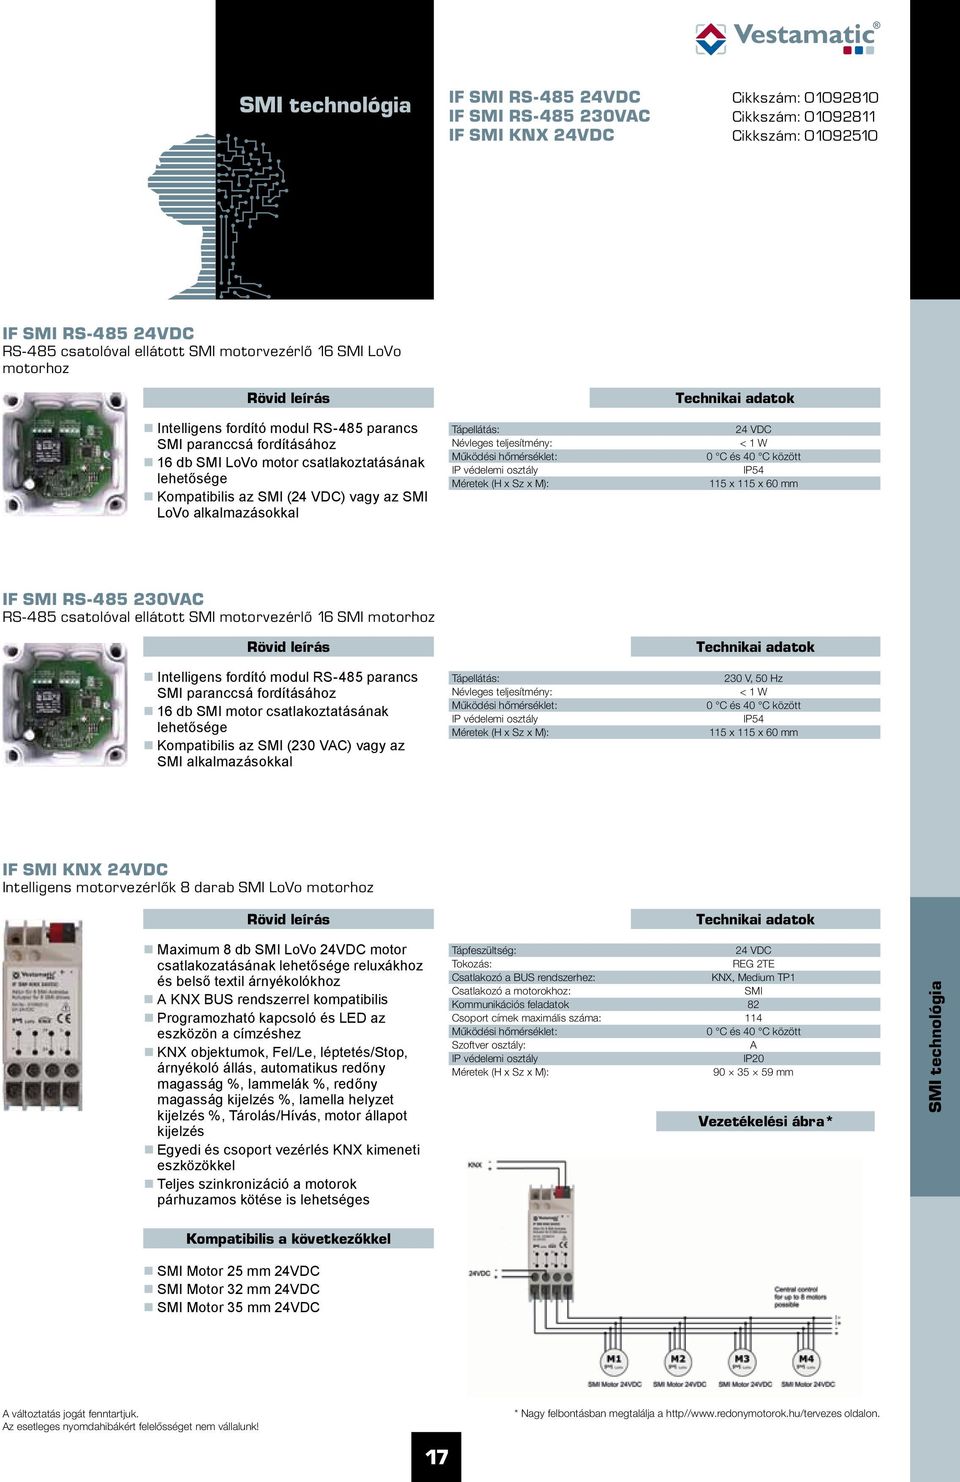 24 VDC < 1 W IP54 115 x 115 x 60 mm IF SMI RS-485 230VC RS-485 csatolóval ellátott SMI motorvezérlő 16 SMI motorhoz Intelligens fordító modul RS-485 parancs SMI paranccsá fordításához 16 db SMI motor